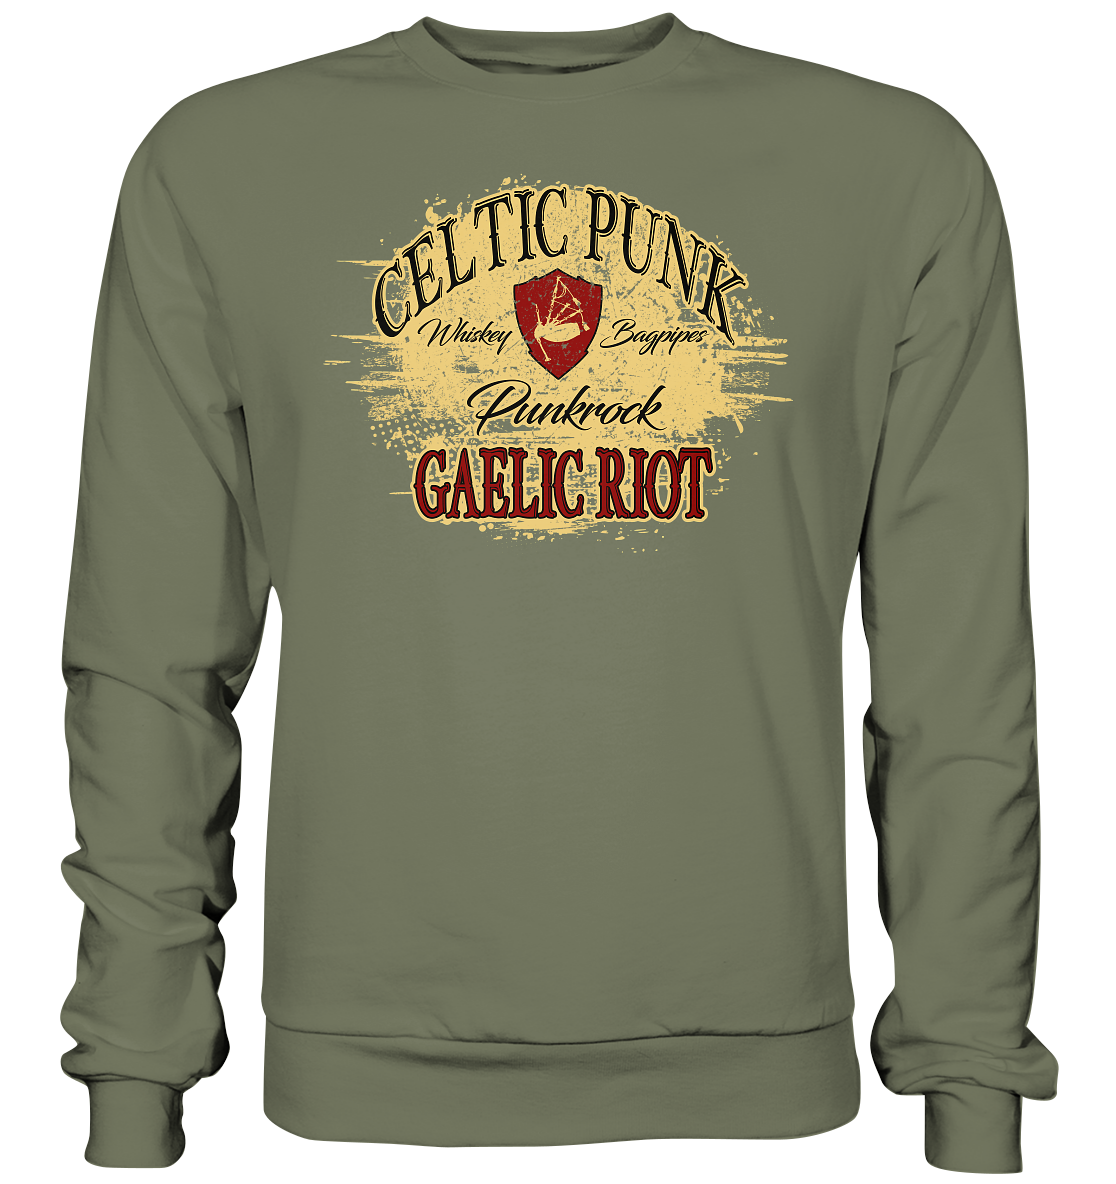 Celtic Punk "Gaelic Riot" - Premium Sweatshirt